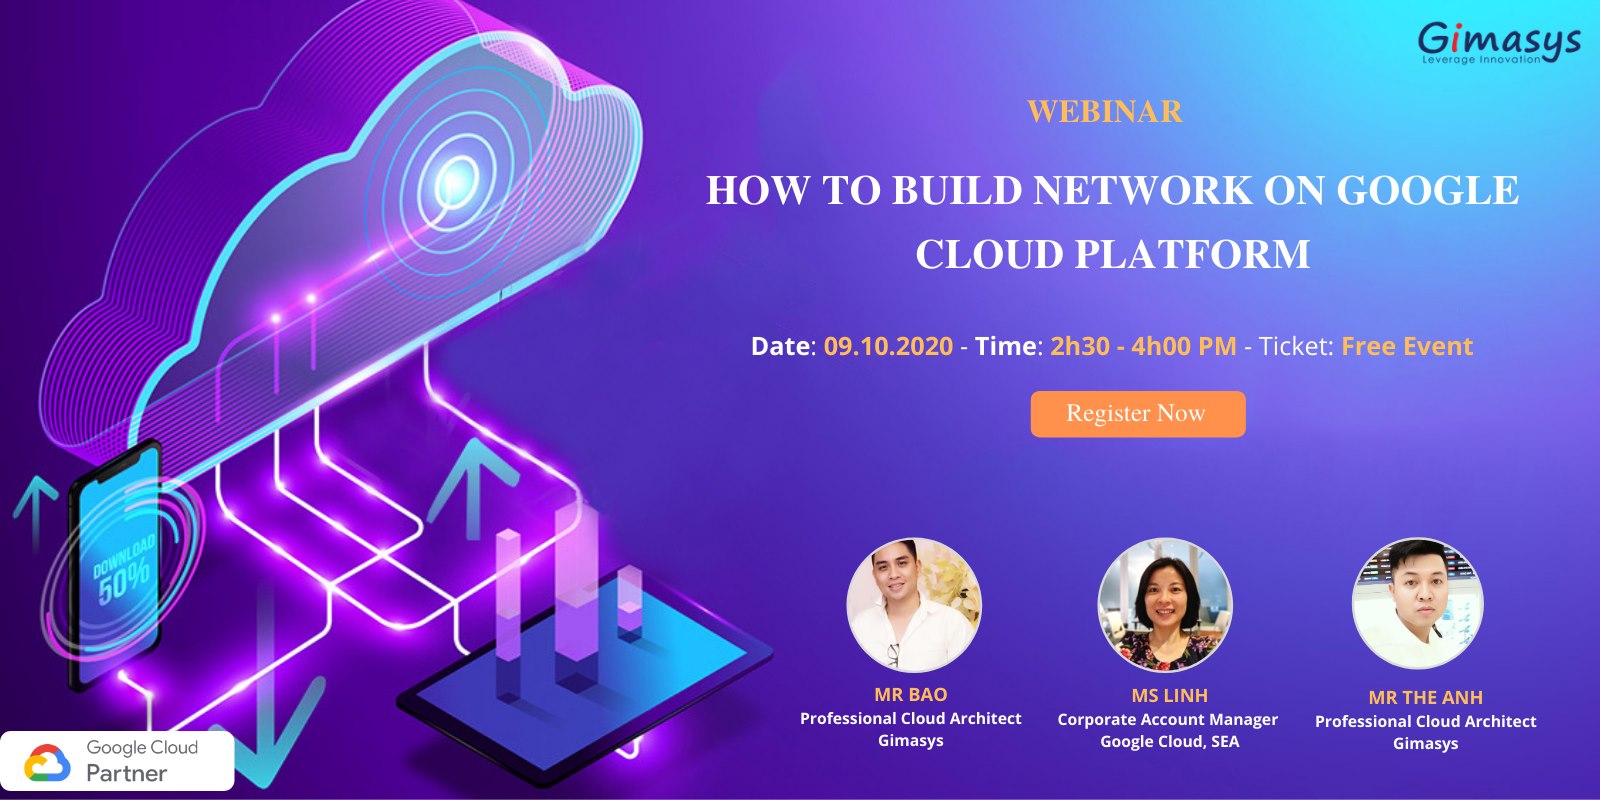 Chương Trình Webinar 09/10/2020: HOW TO BUILD NETWORK ON GOOGLE CLOUD PLATFORM